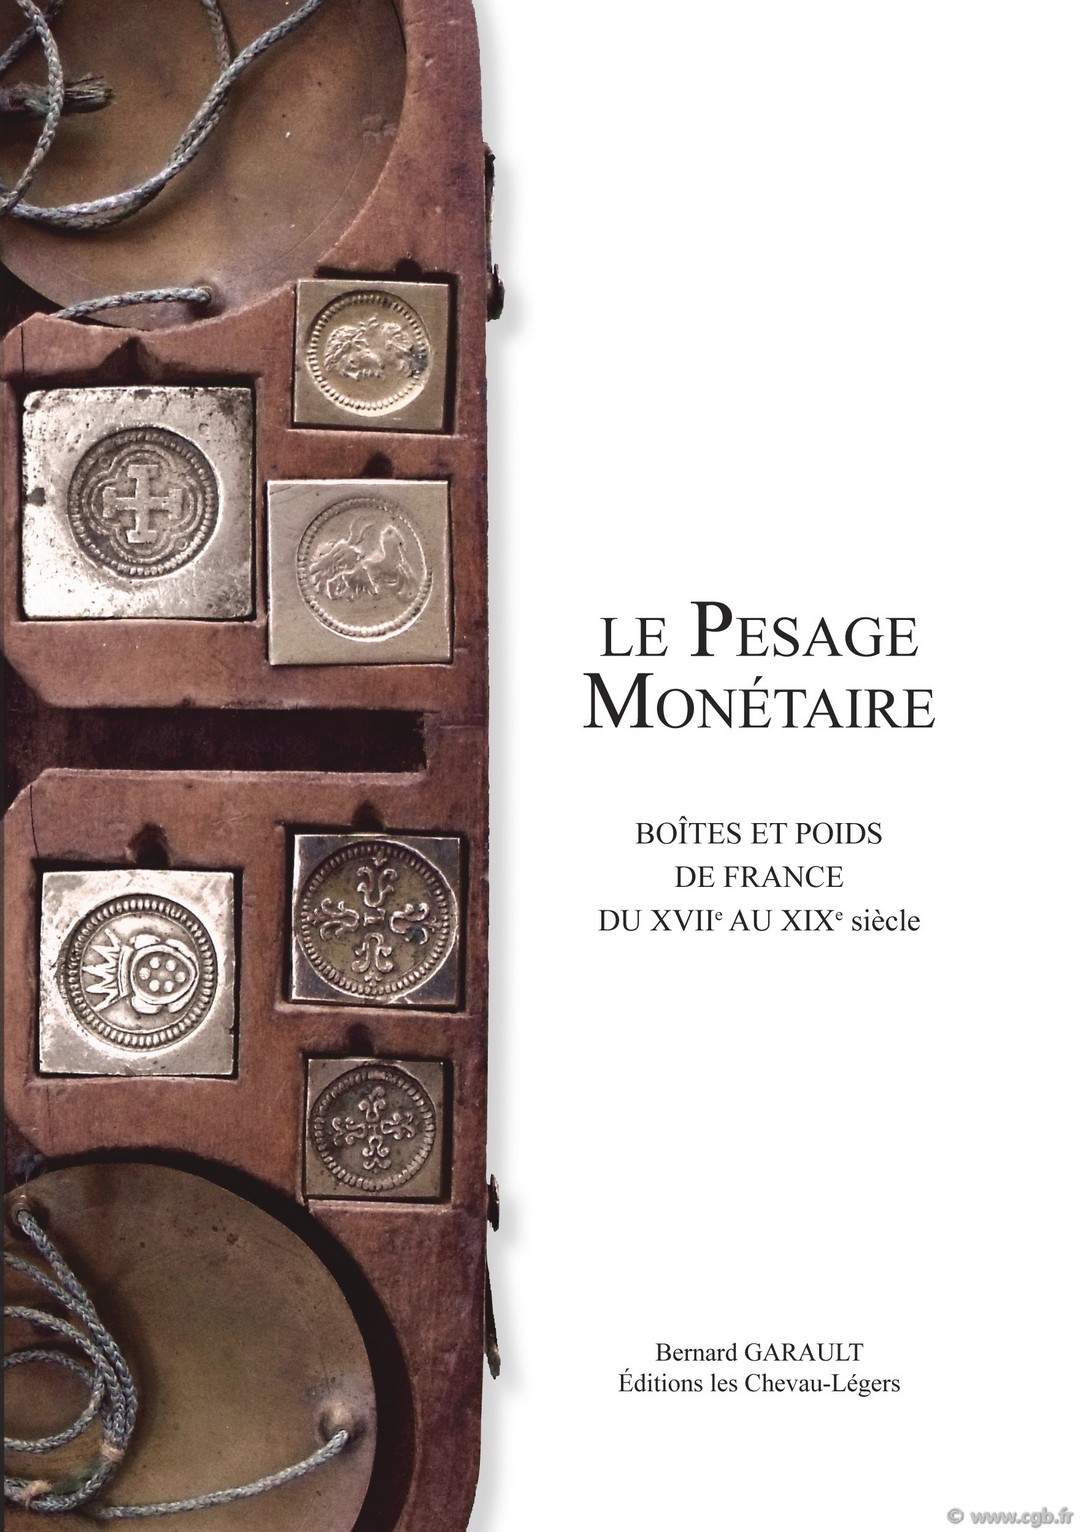 Le Pesage Monétaire, Boîtes et poids de France du XVIIe au XIXe siècle GARAULT B.